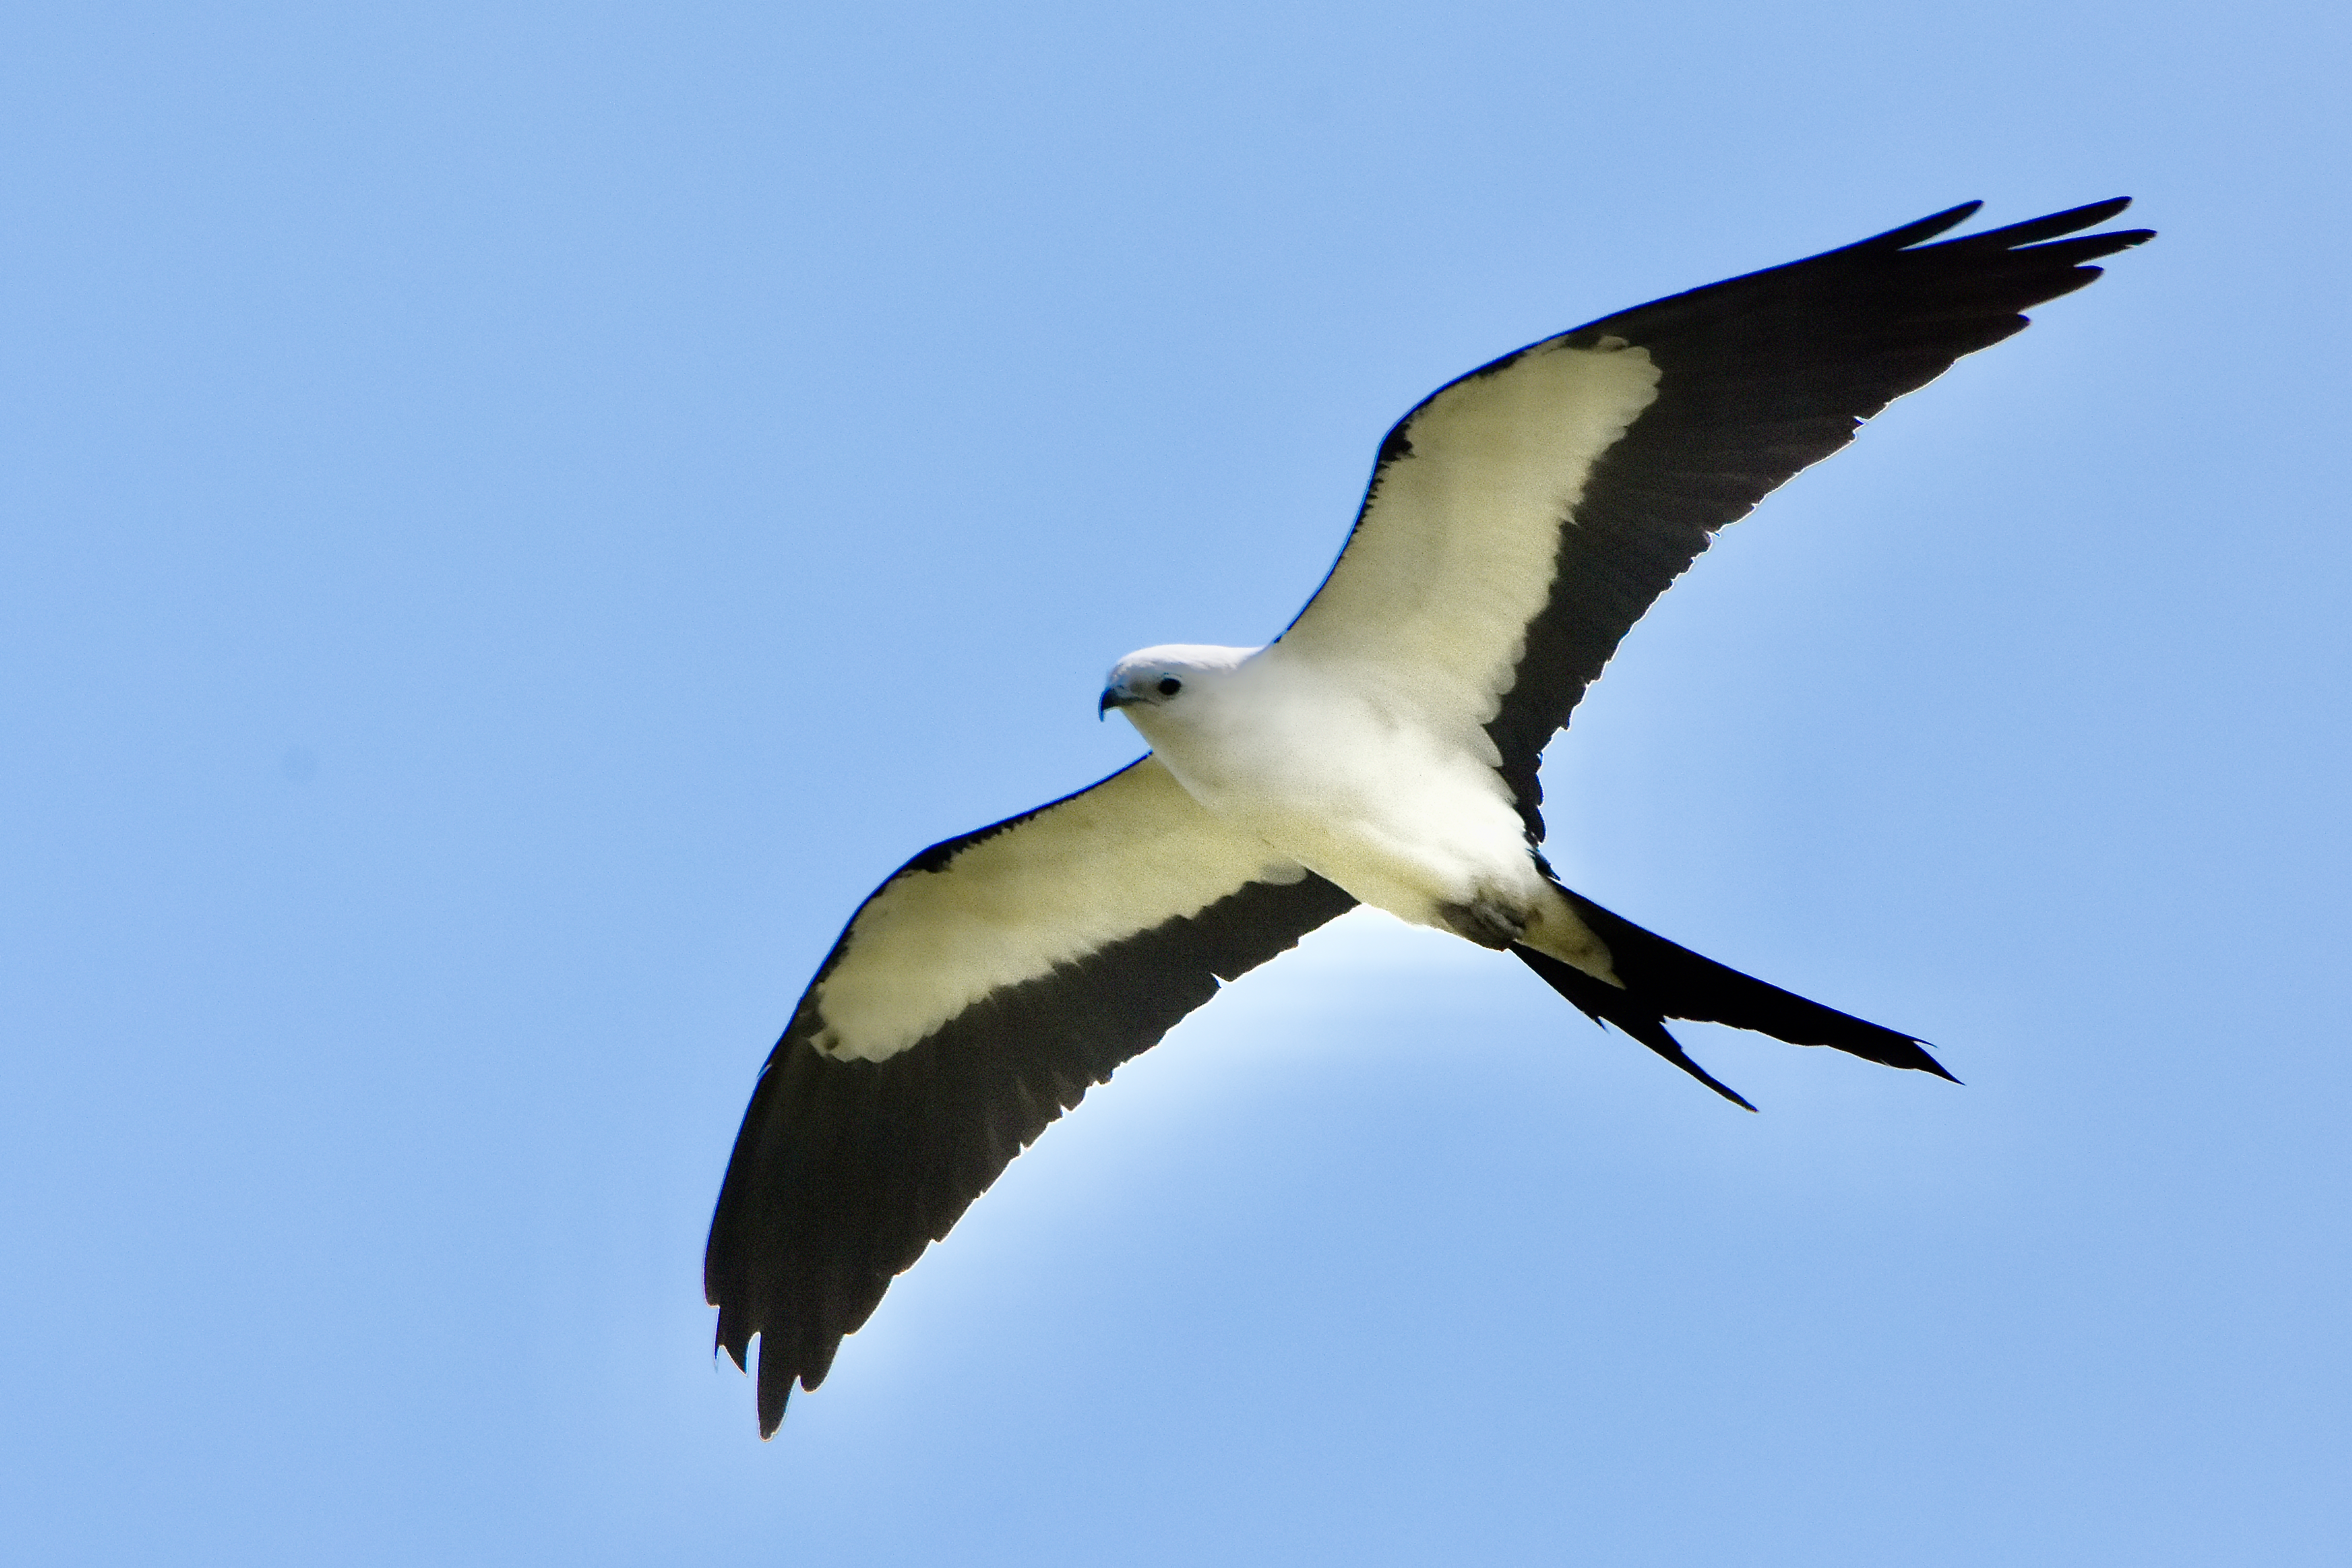 swallow-tailed kite